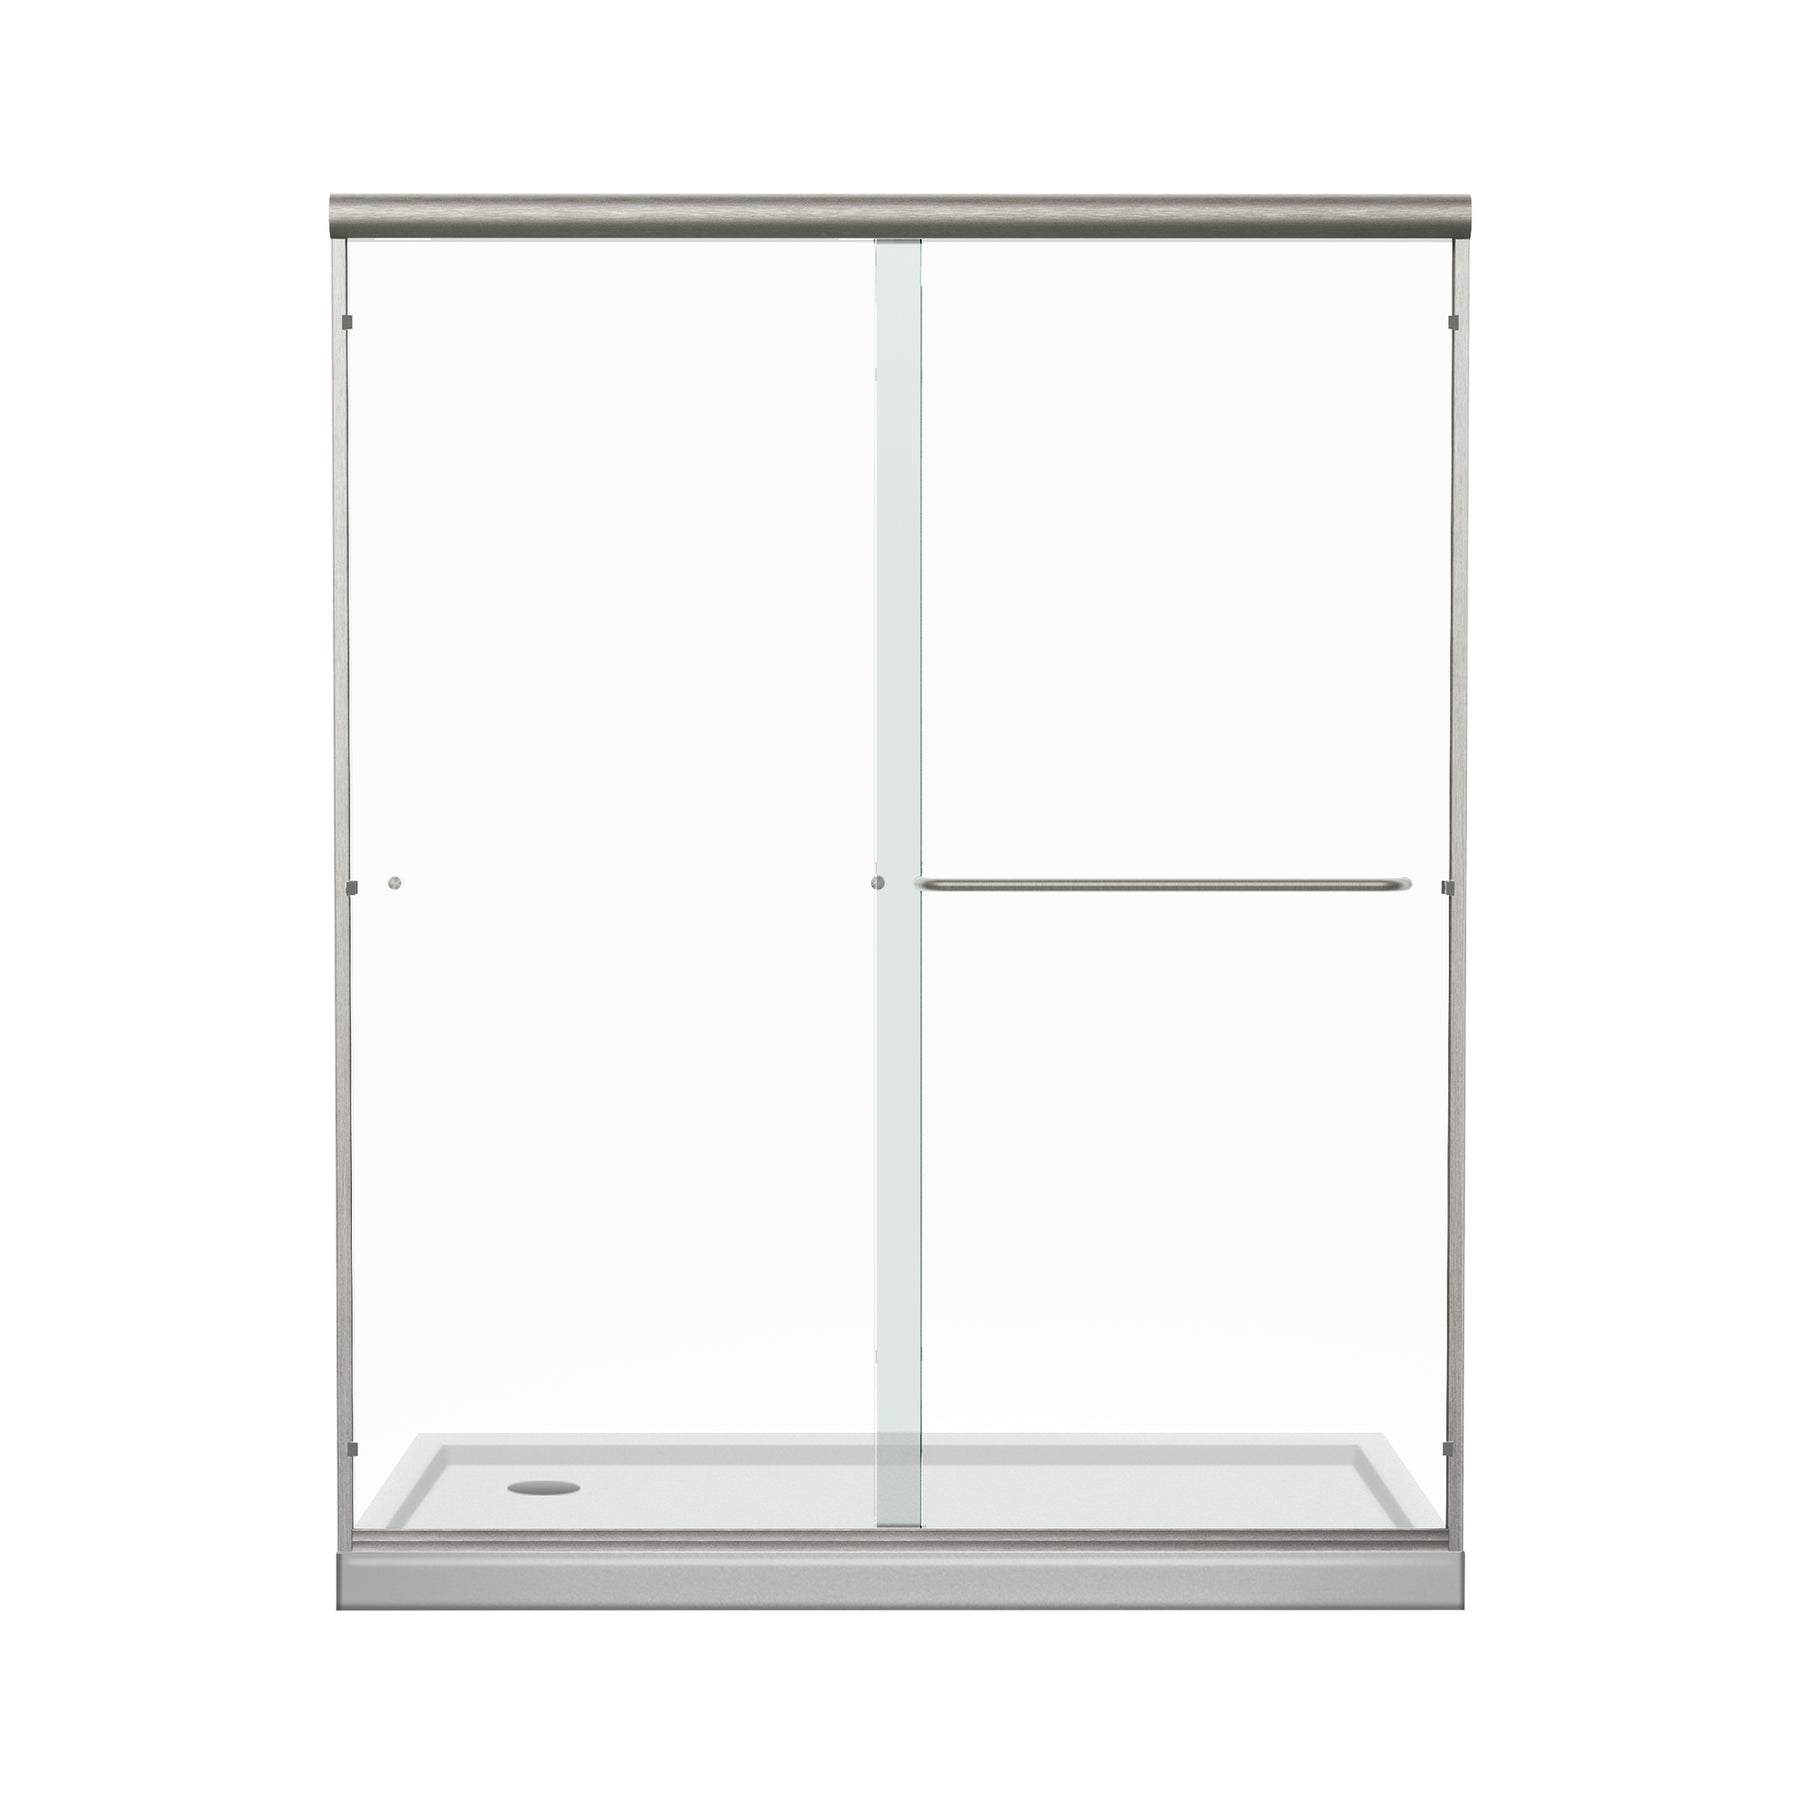 SL4U Framed Sliding Shower Door, Shower 1/4" Clear Glass, Brushed Nickel Finish, 54" W x 72" H door.